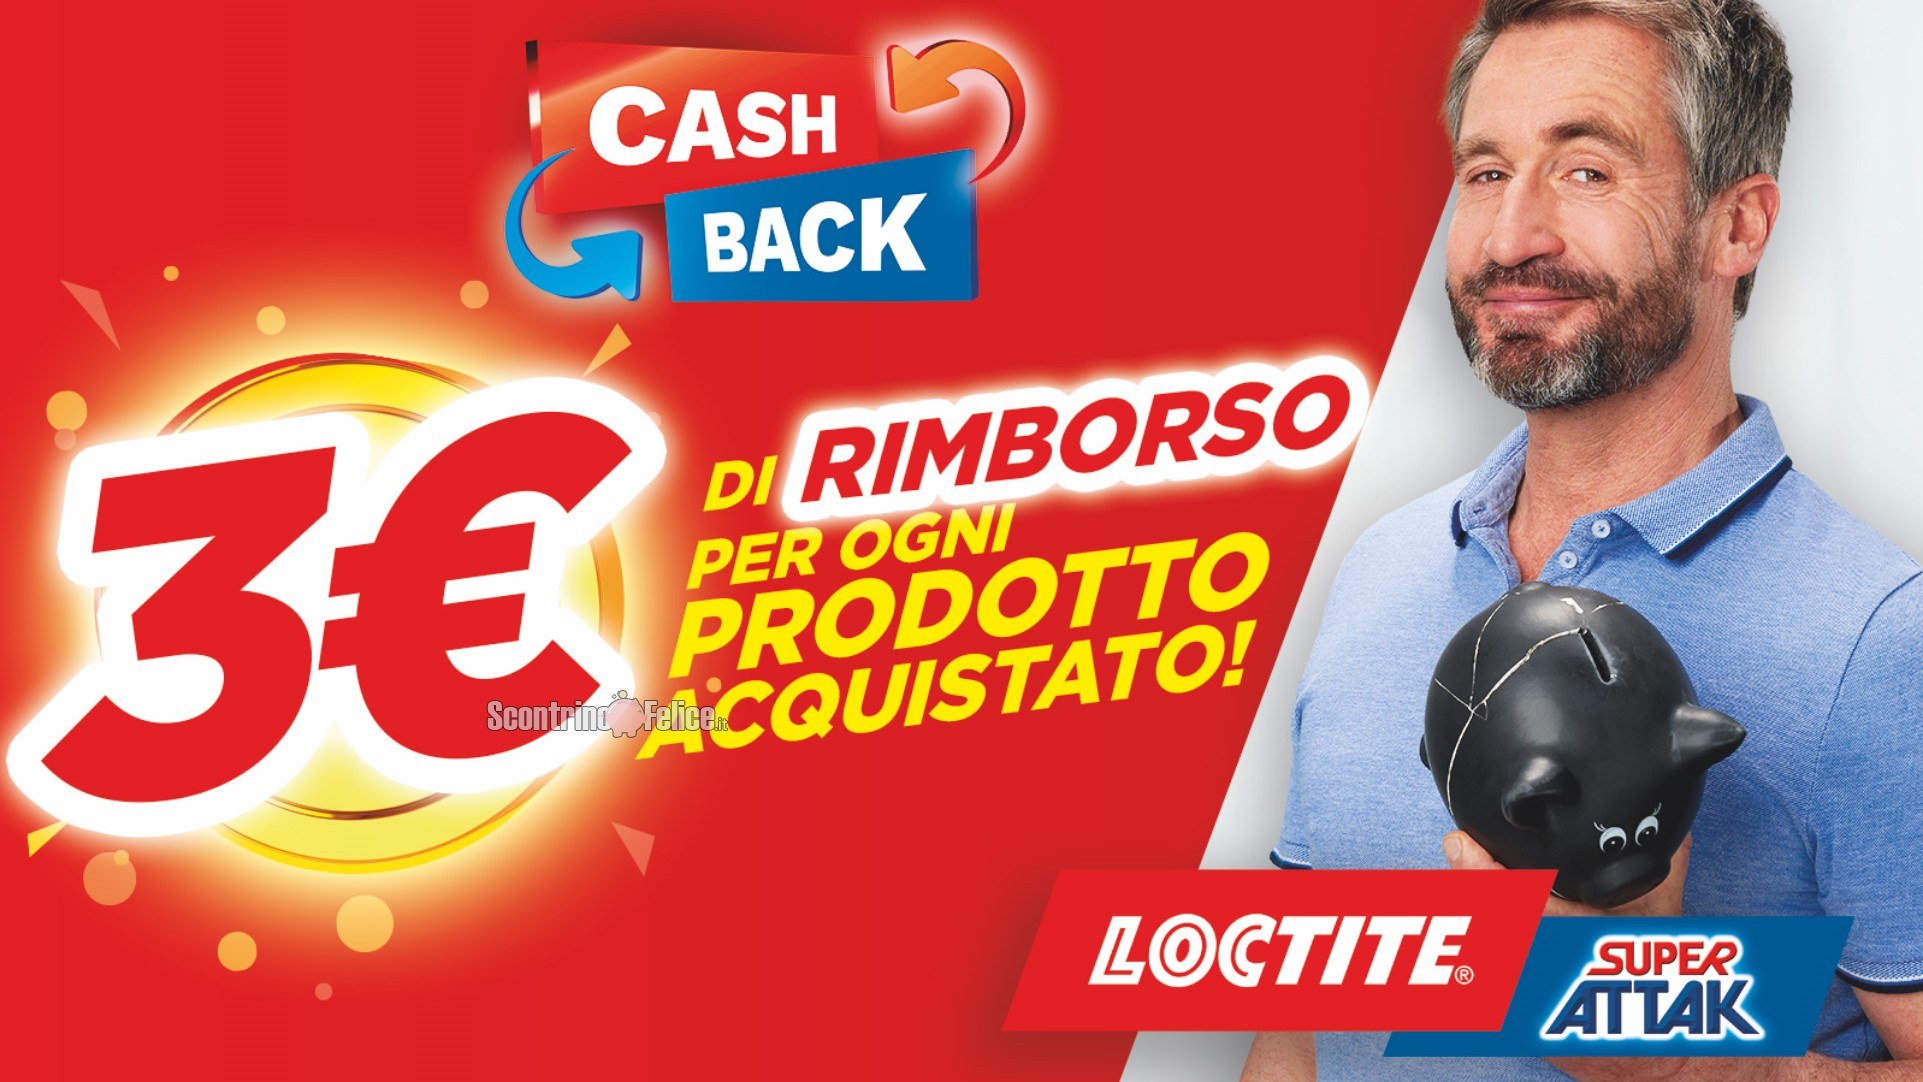 Cashback Loctite Super Attak: ricevi un rimborso di 3 euro per ogni confezione acquistata